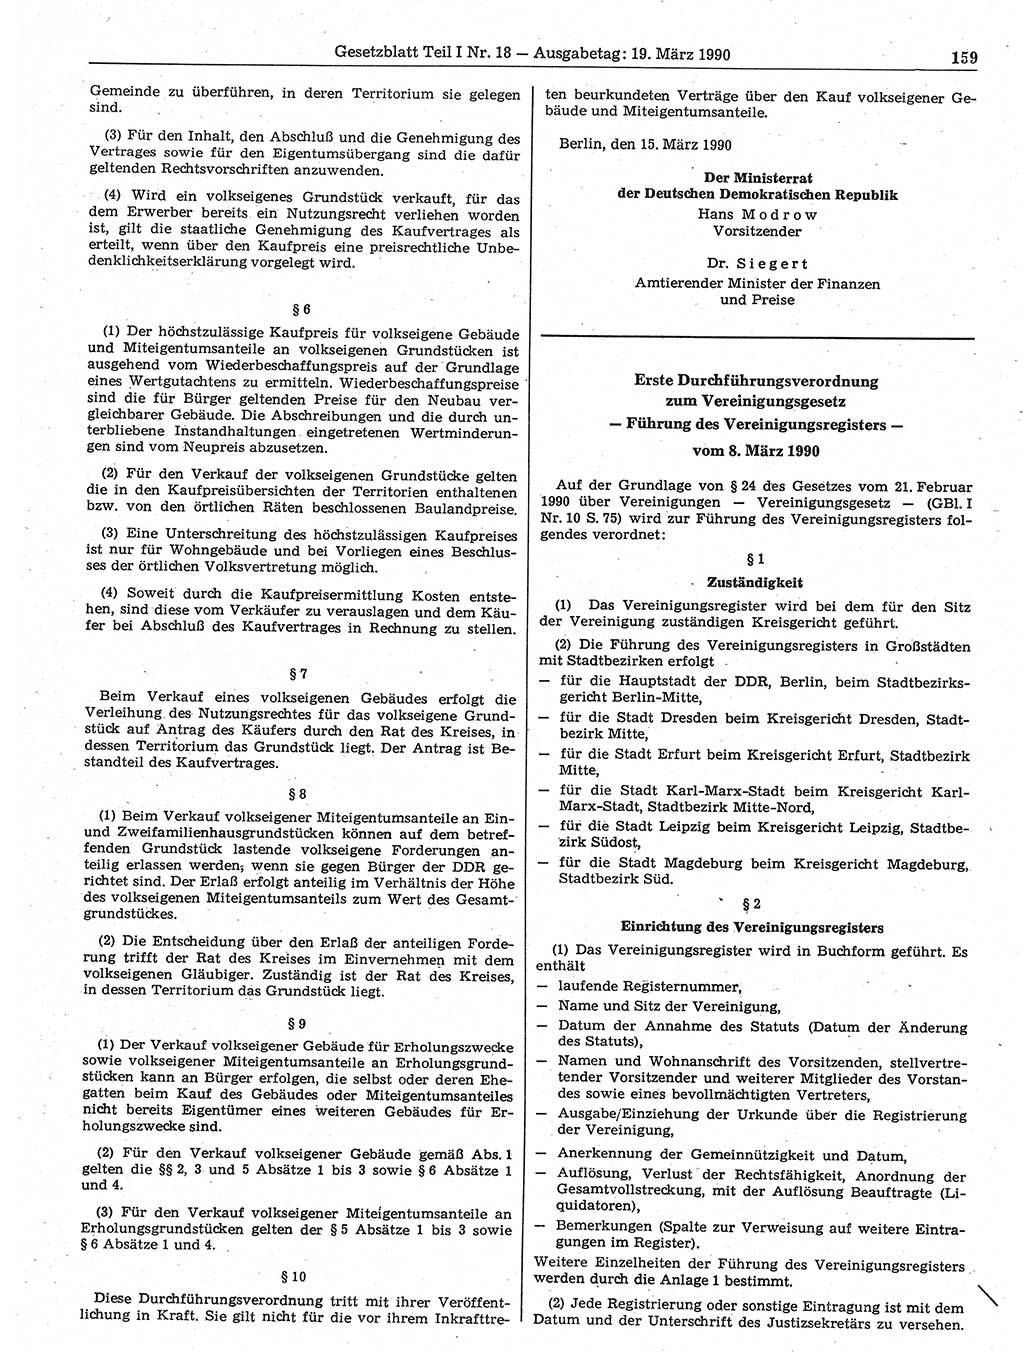 Gesetzblatt (GBl.) der Deutschen Demokratischen Republik (DDR) Teil Ⅰ 1990, Seite 159 (GBl. DDR Ⅰ 1990, S. 159)